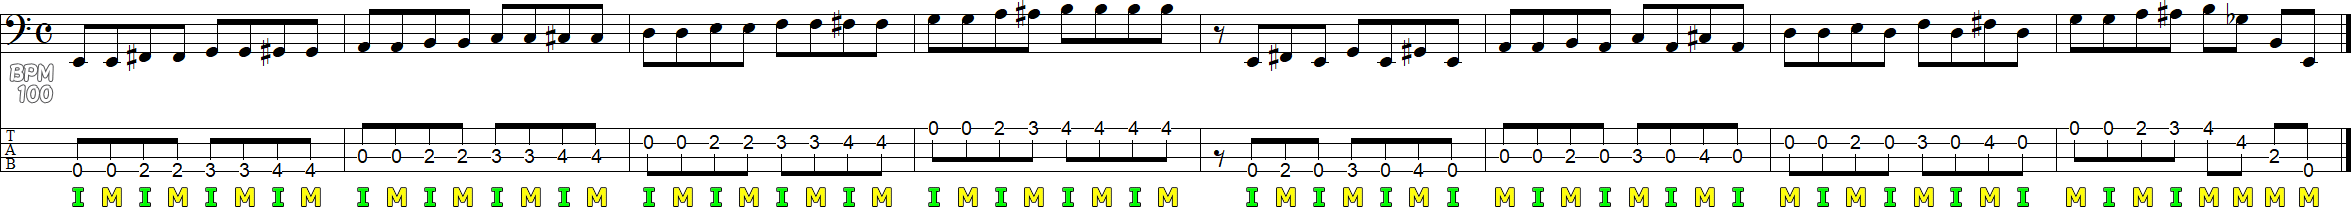 ツーフィンガー奏法のレイキング練習譜面2